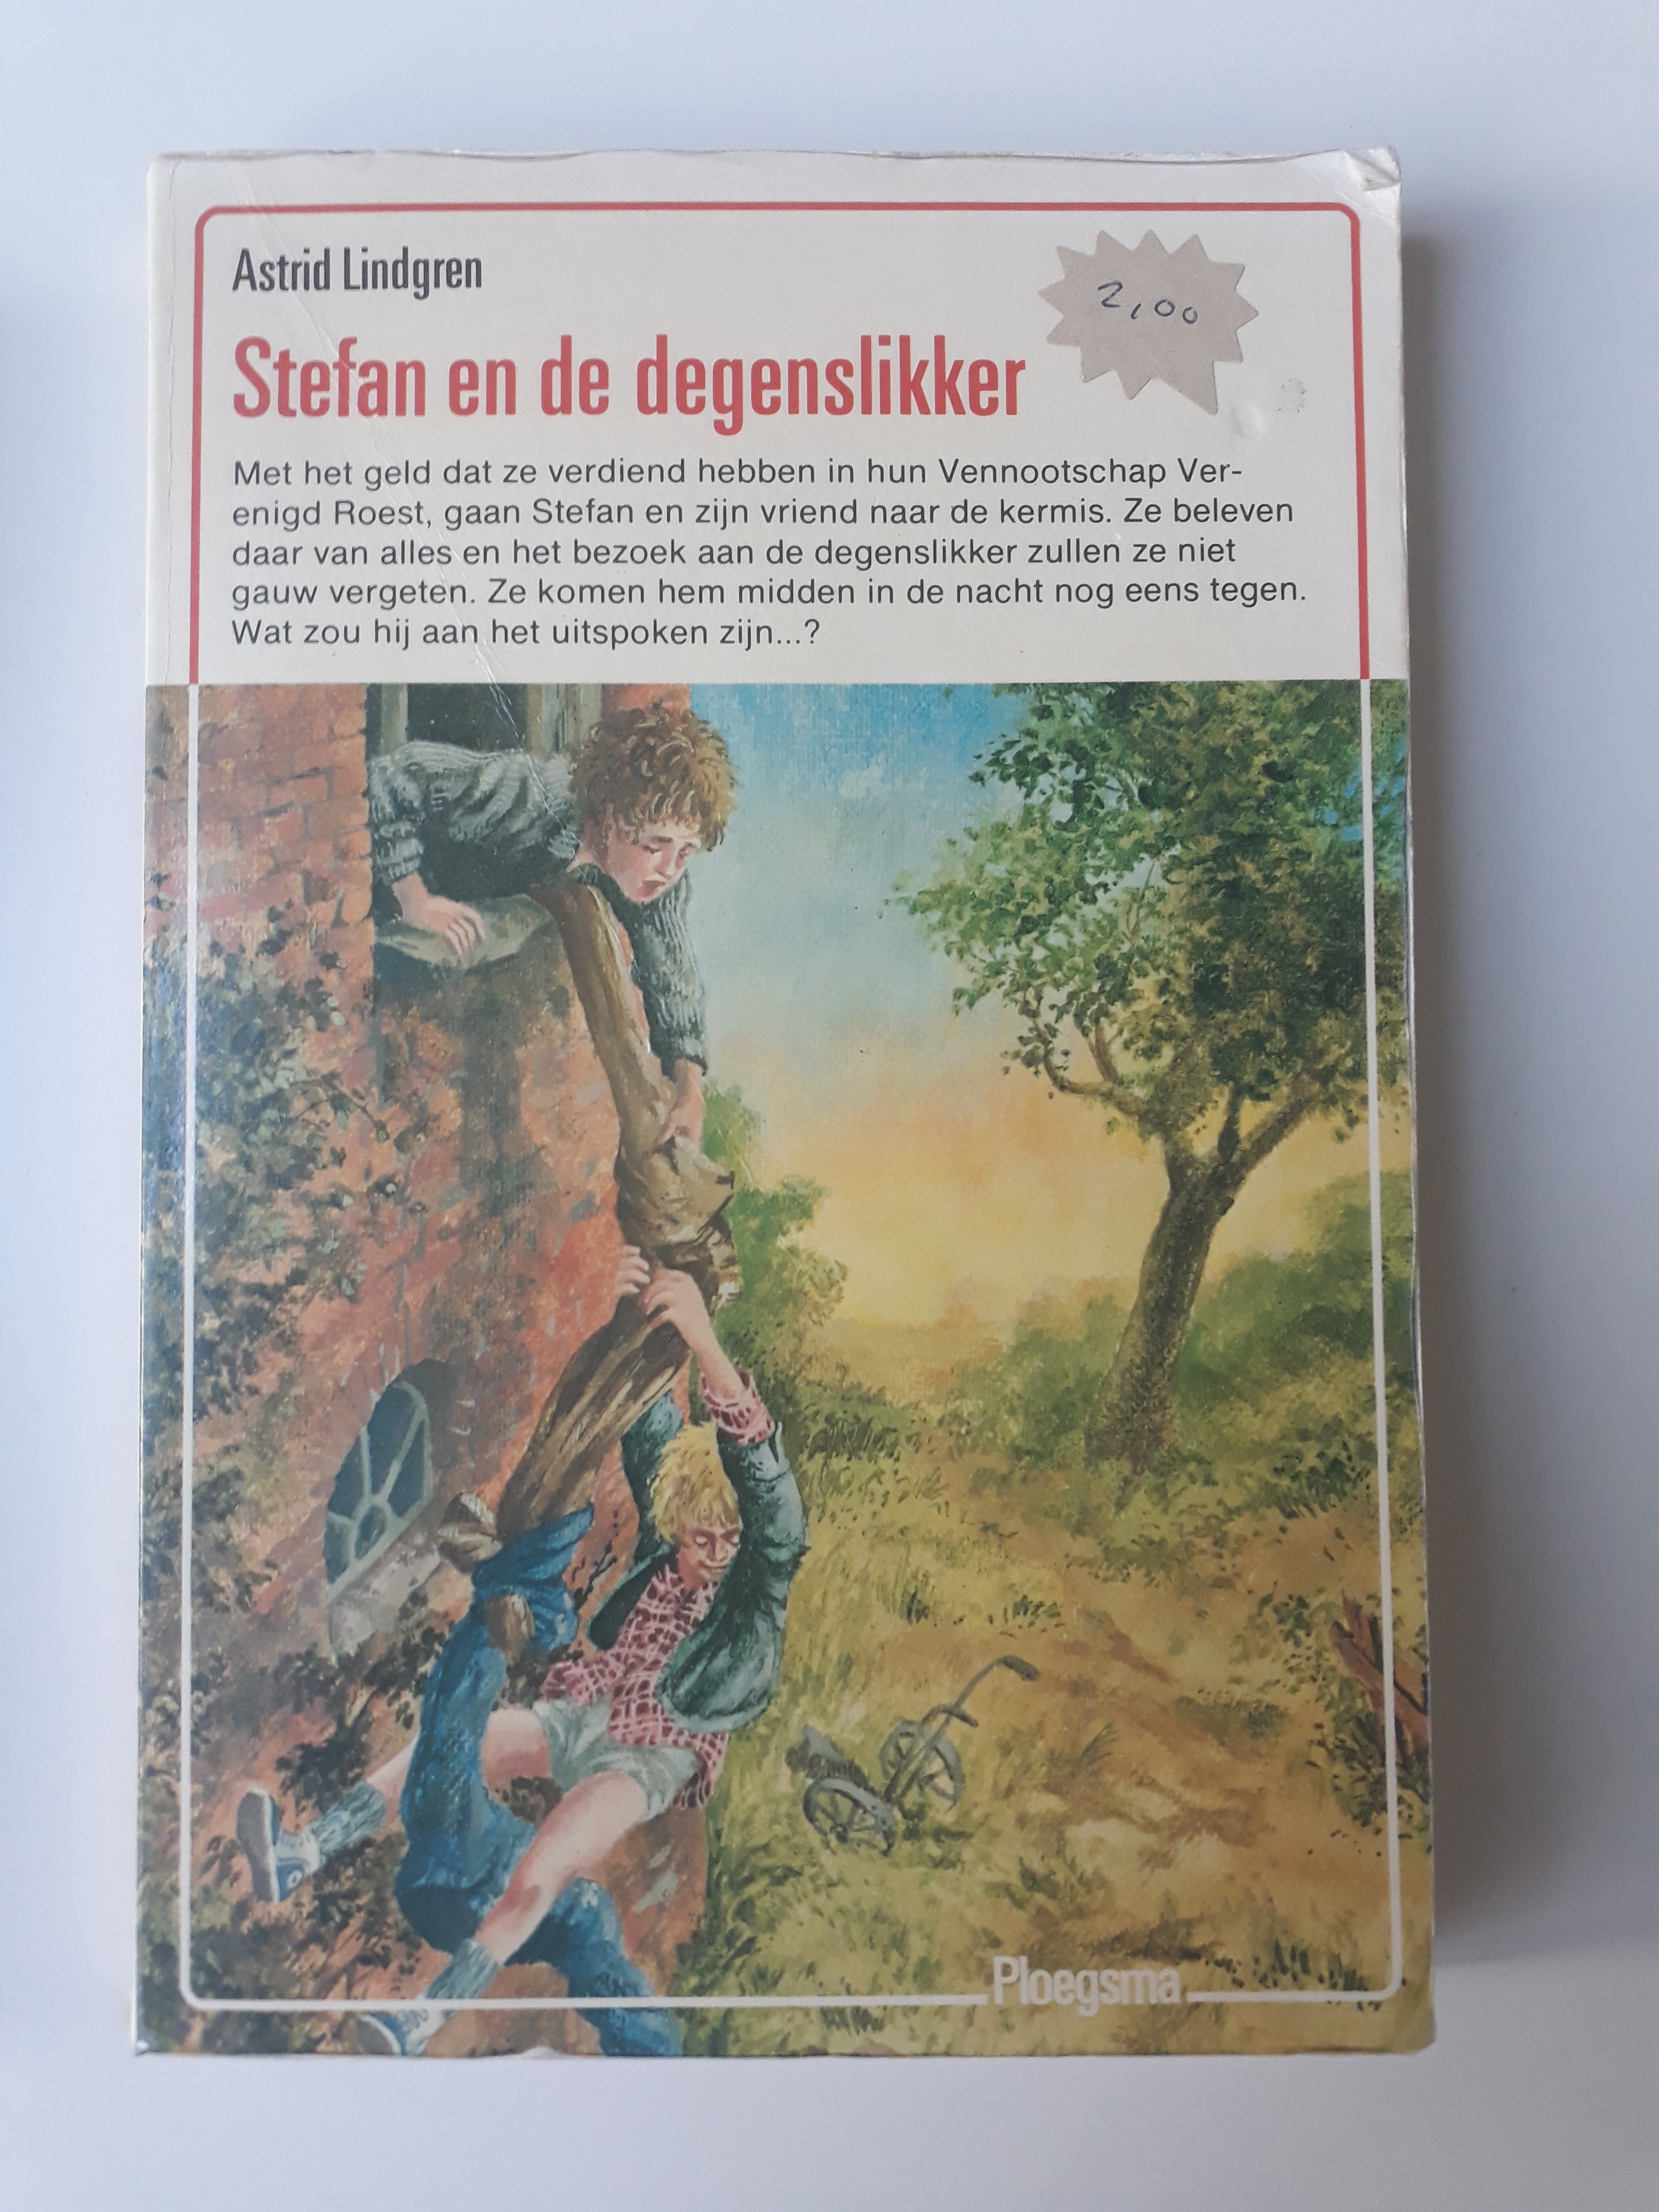 Stefan en de degenslikker - Astrid Lindgren - 2dehands